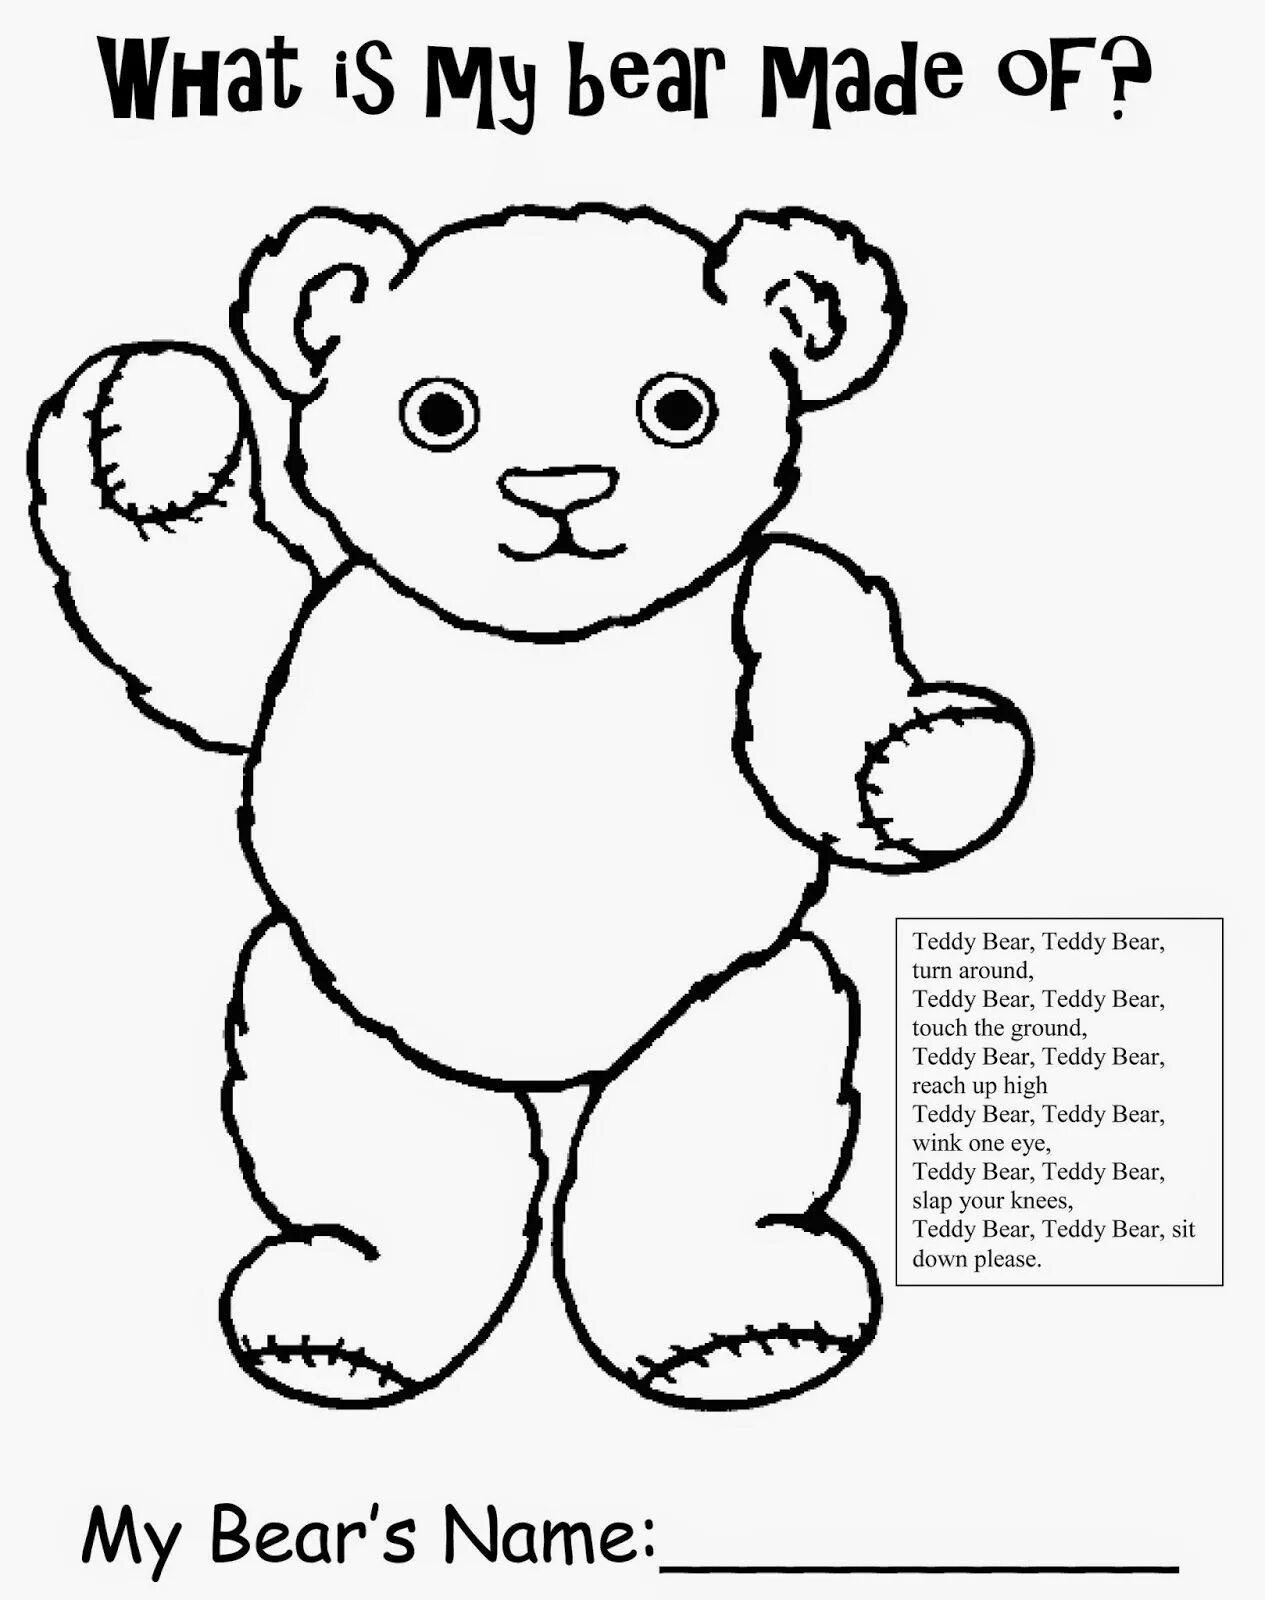 Teddy bear #3